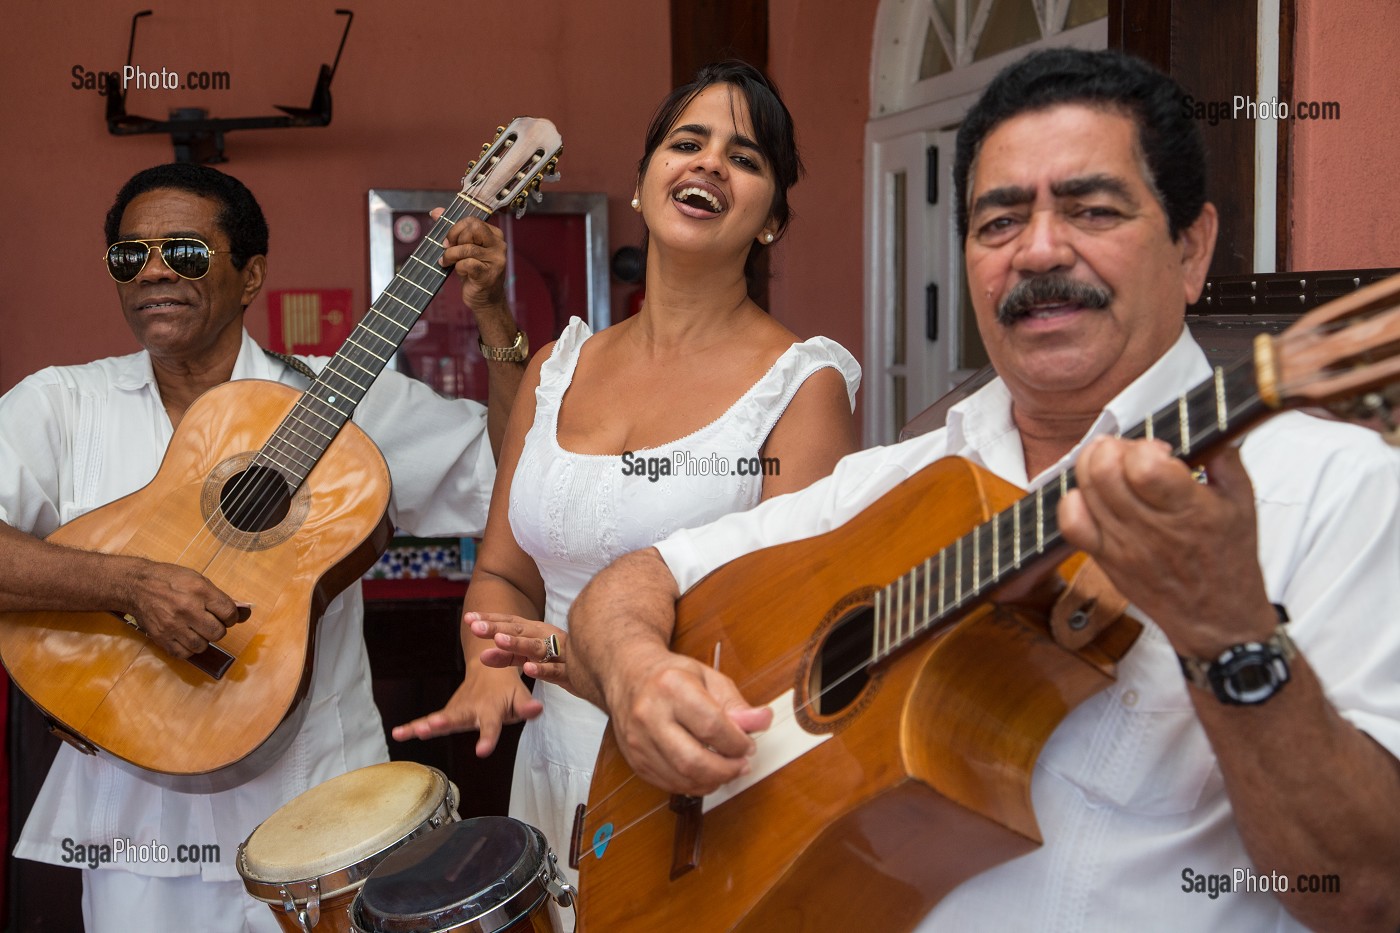 MUSICIENS CUBAINS DANS LA VIEILLE VILLE (HABANA VIEJA), LA HAVANE, CUBA, CARAIBES 